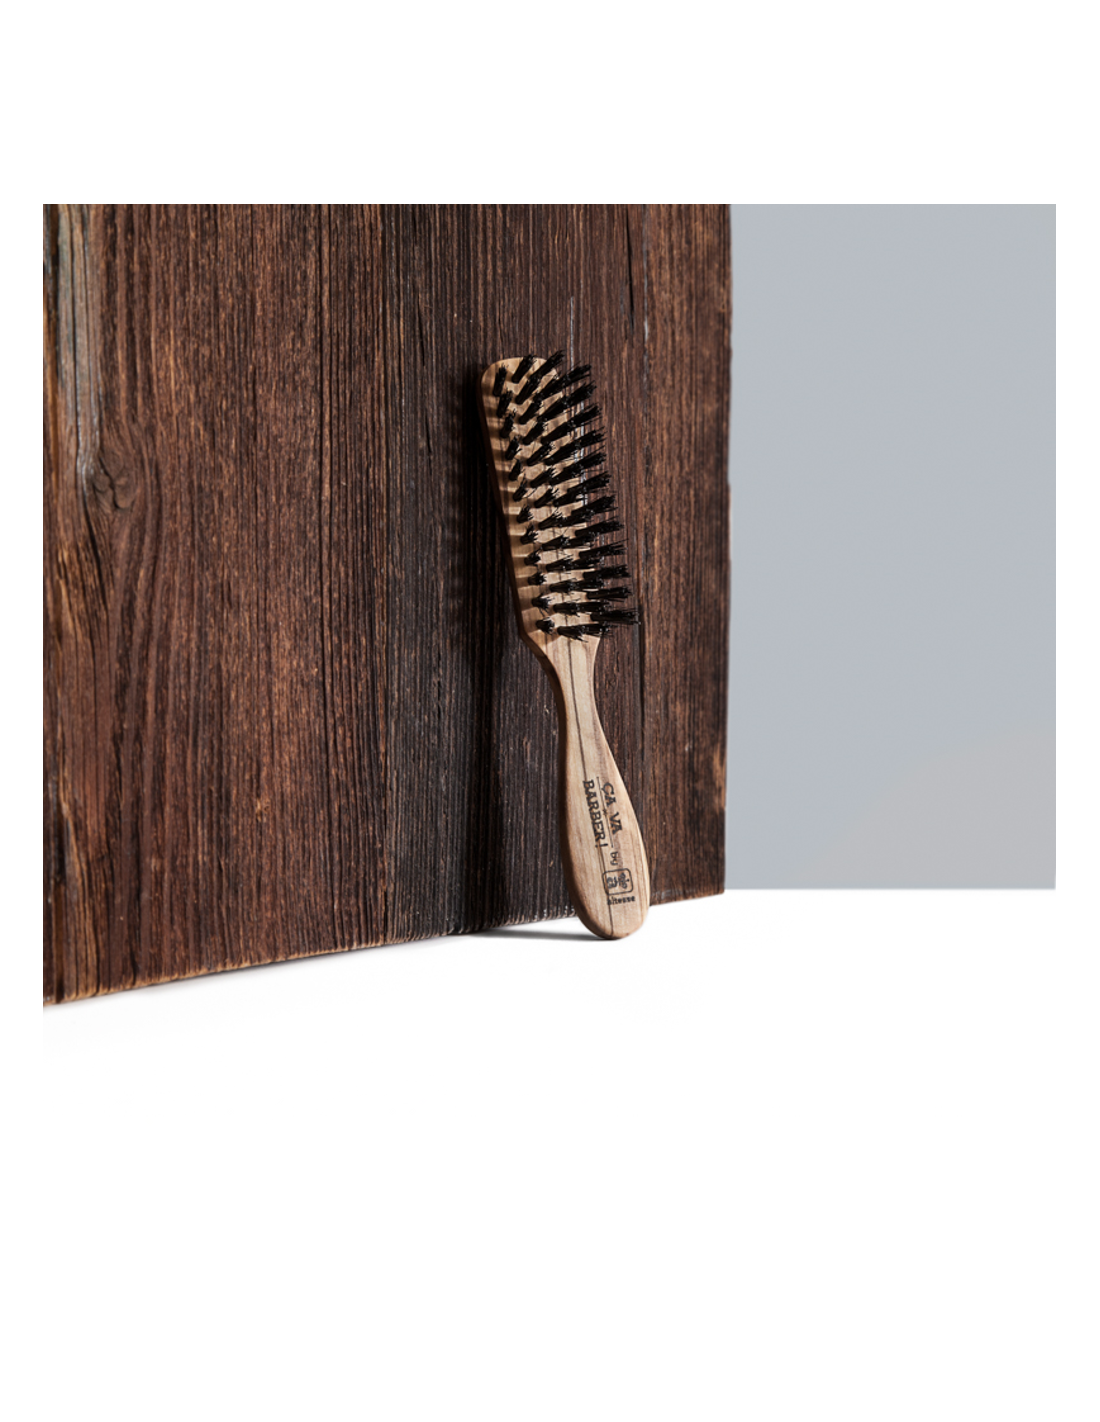 Brosses et peignes pour démêler vos cheveux – L'Artisan Brossier